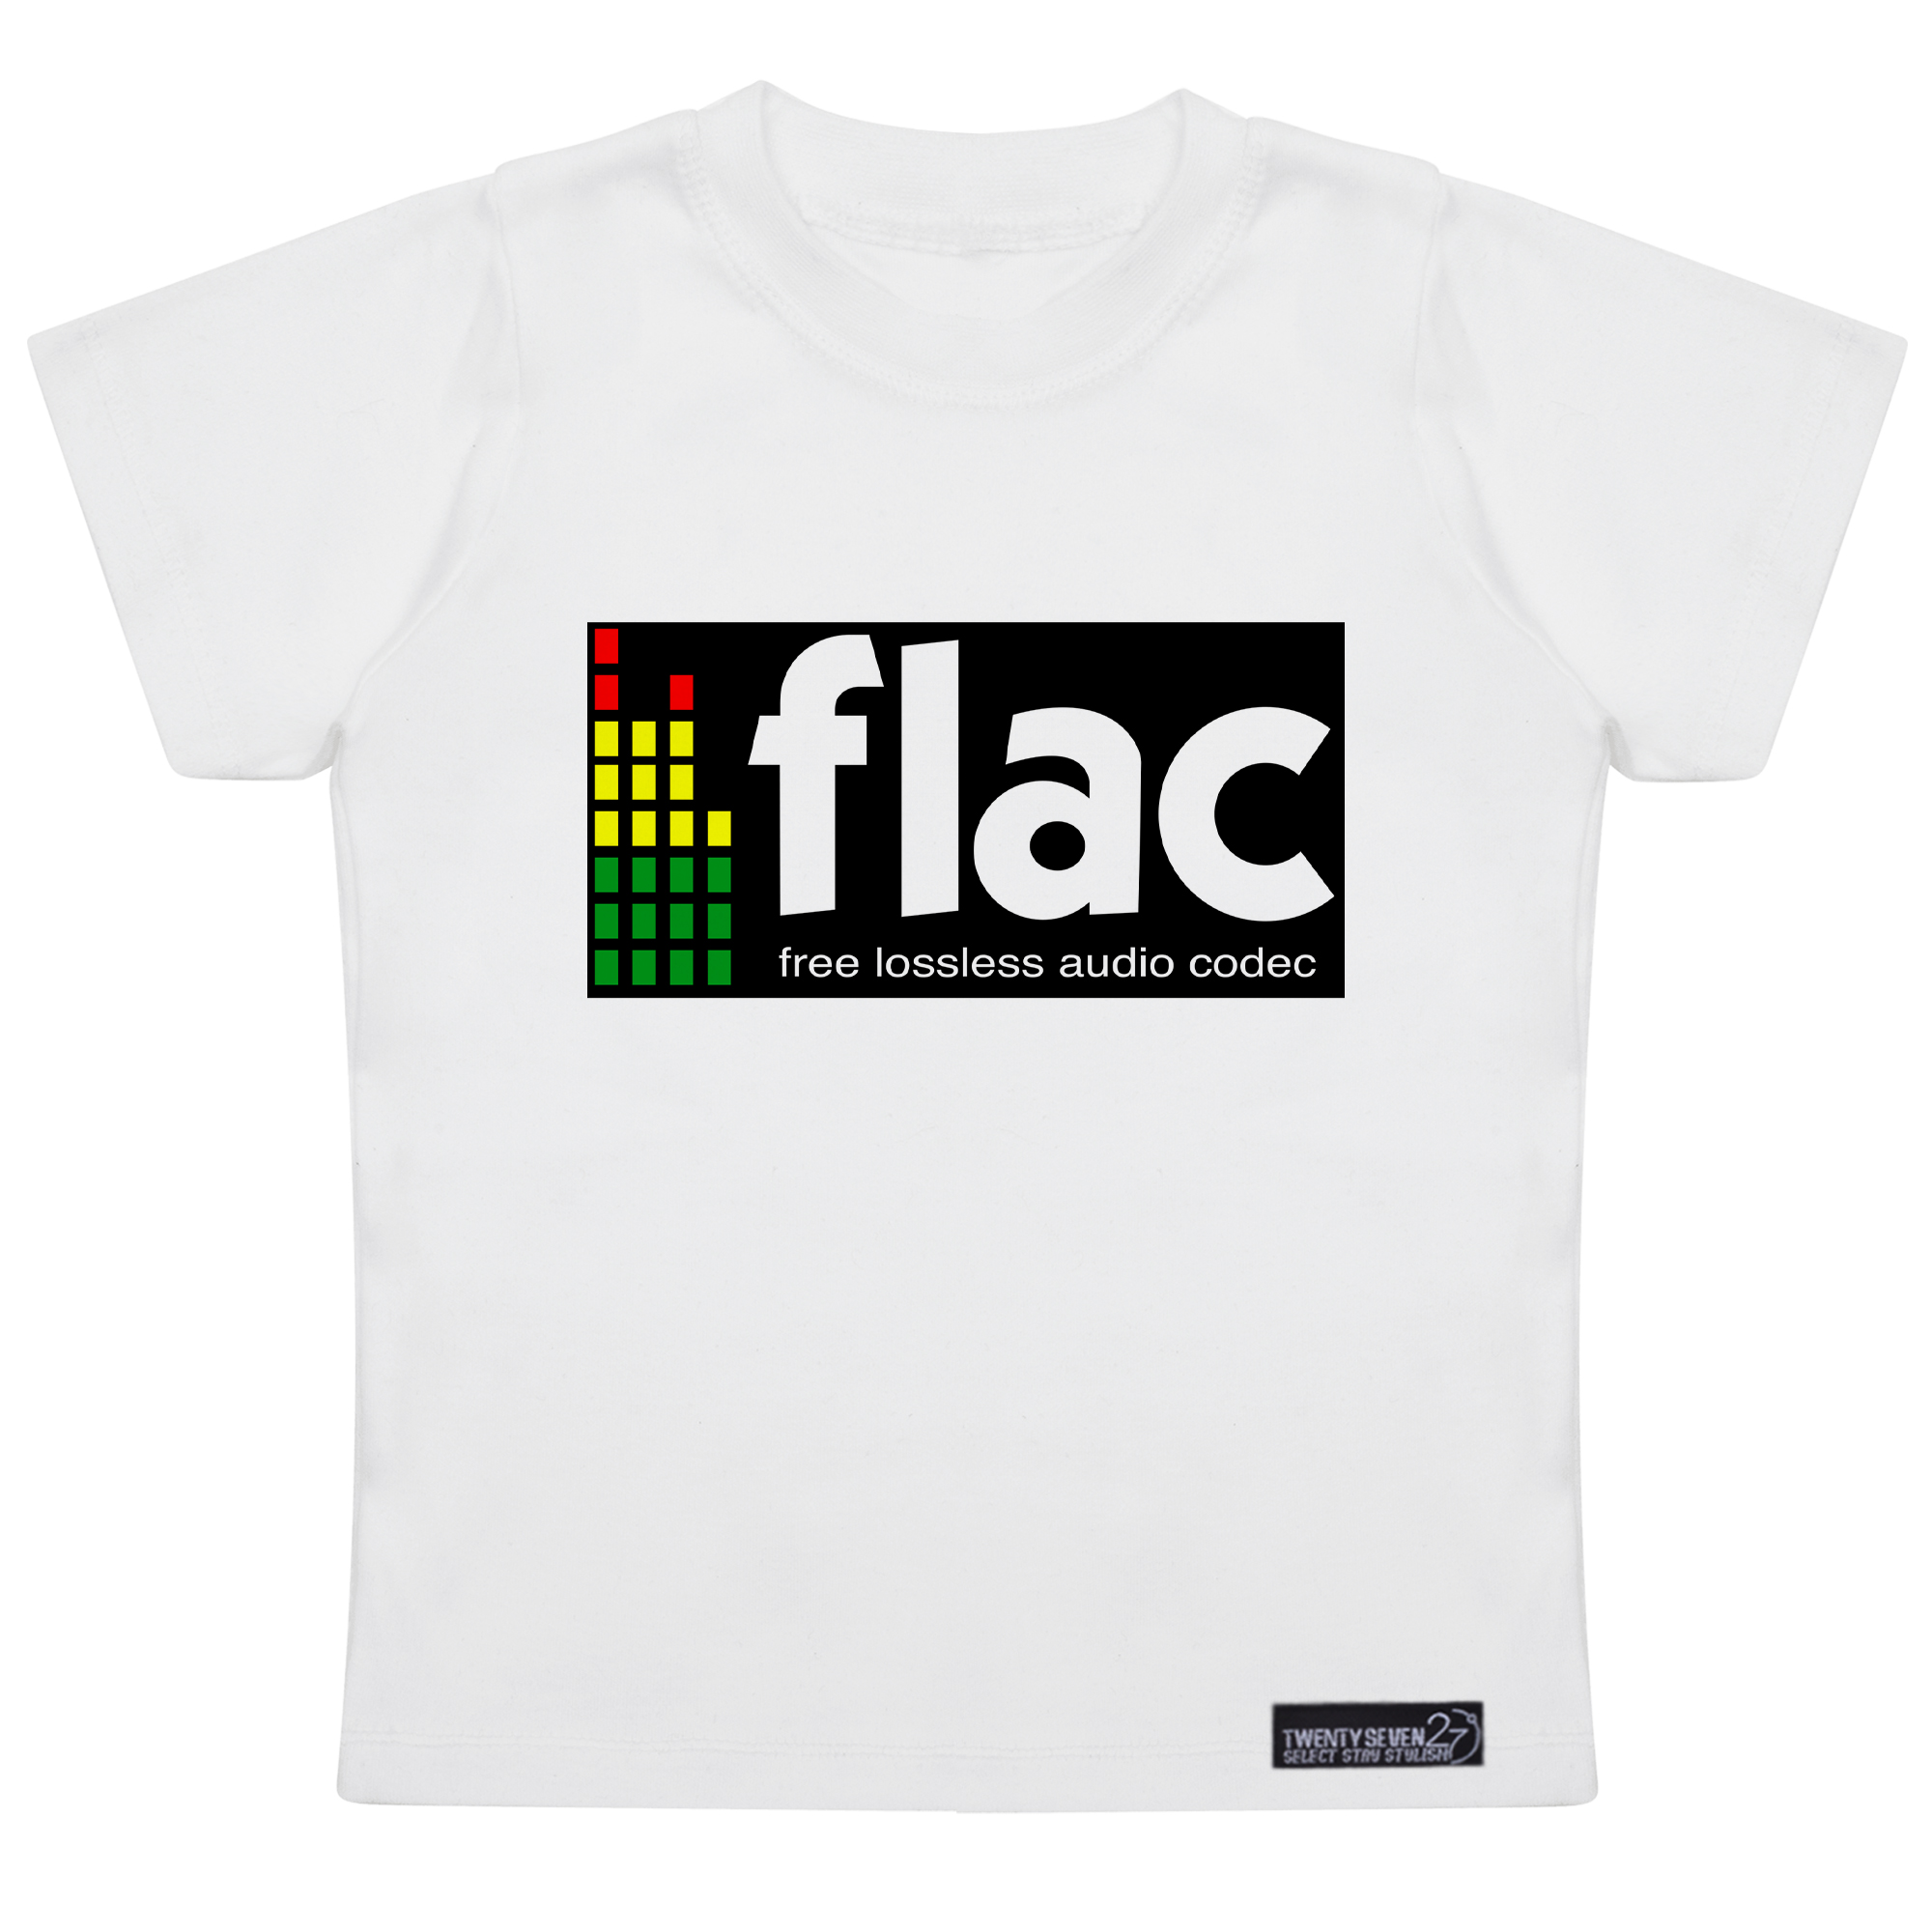 تی شرت آستین کوتاه پسرانه 27 مدل Flac کد MH927